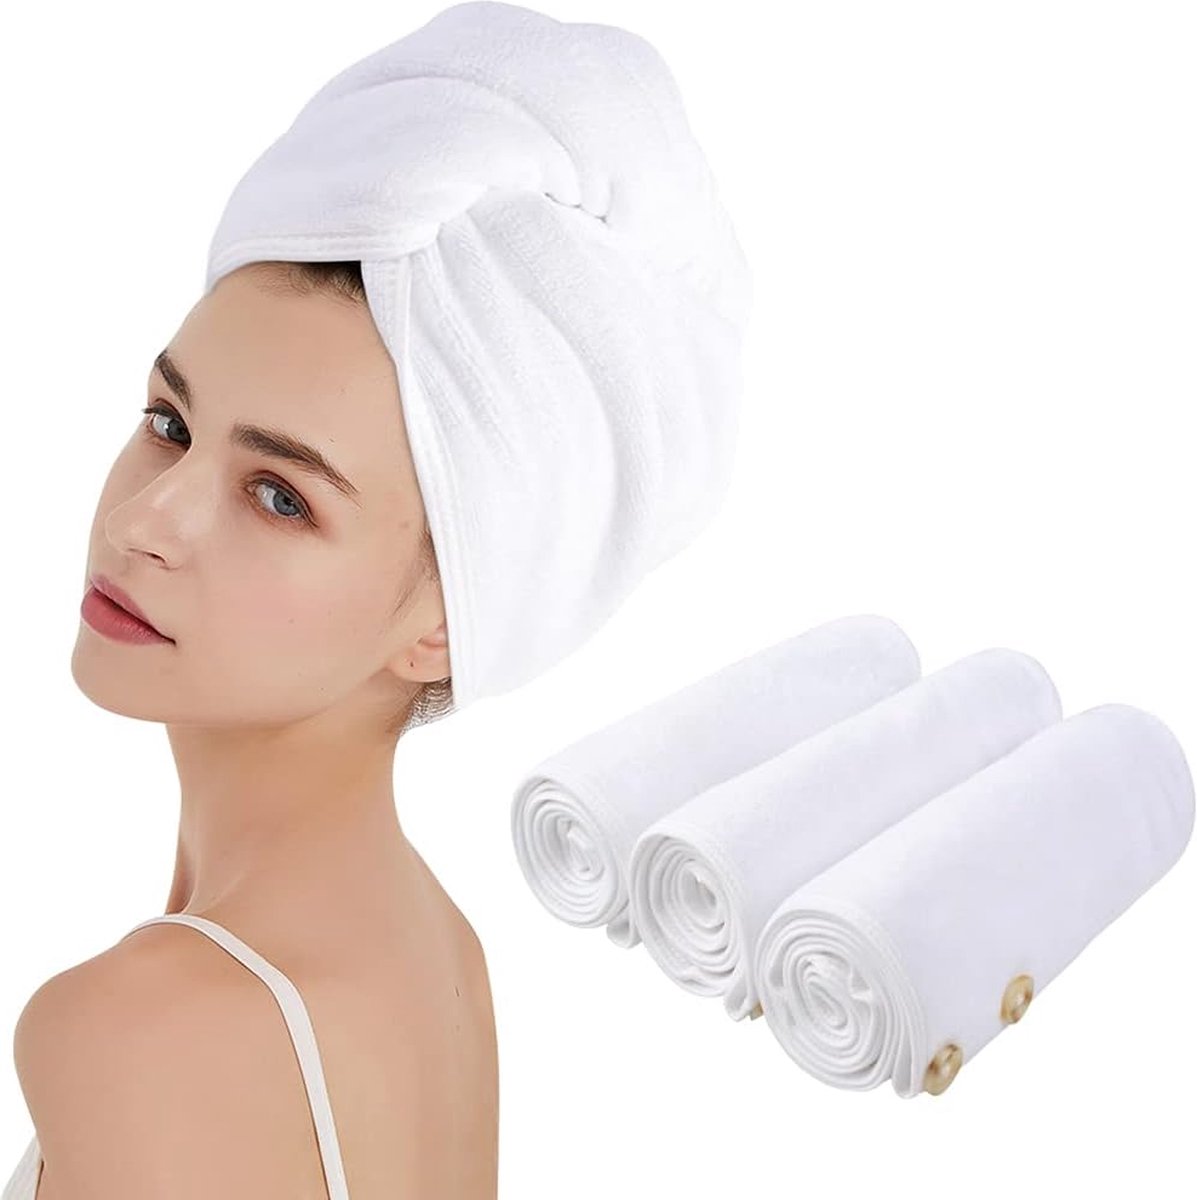 Tulband handdoek met knoop, microvezel, haartulband voor het haar, sneldrogend, haarhanddoek, super absorberend en zacht voor lang haar en alle haartypes, 25 cm x 65 cm, 3 stuks, wit